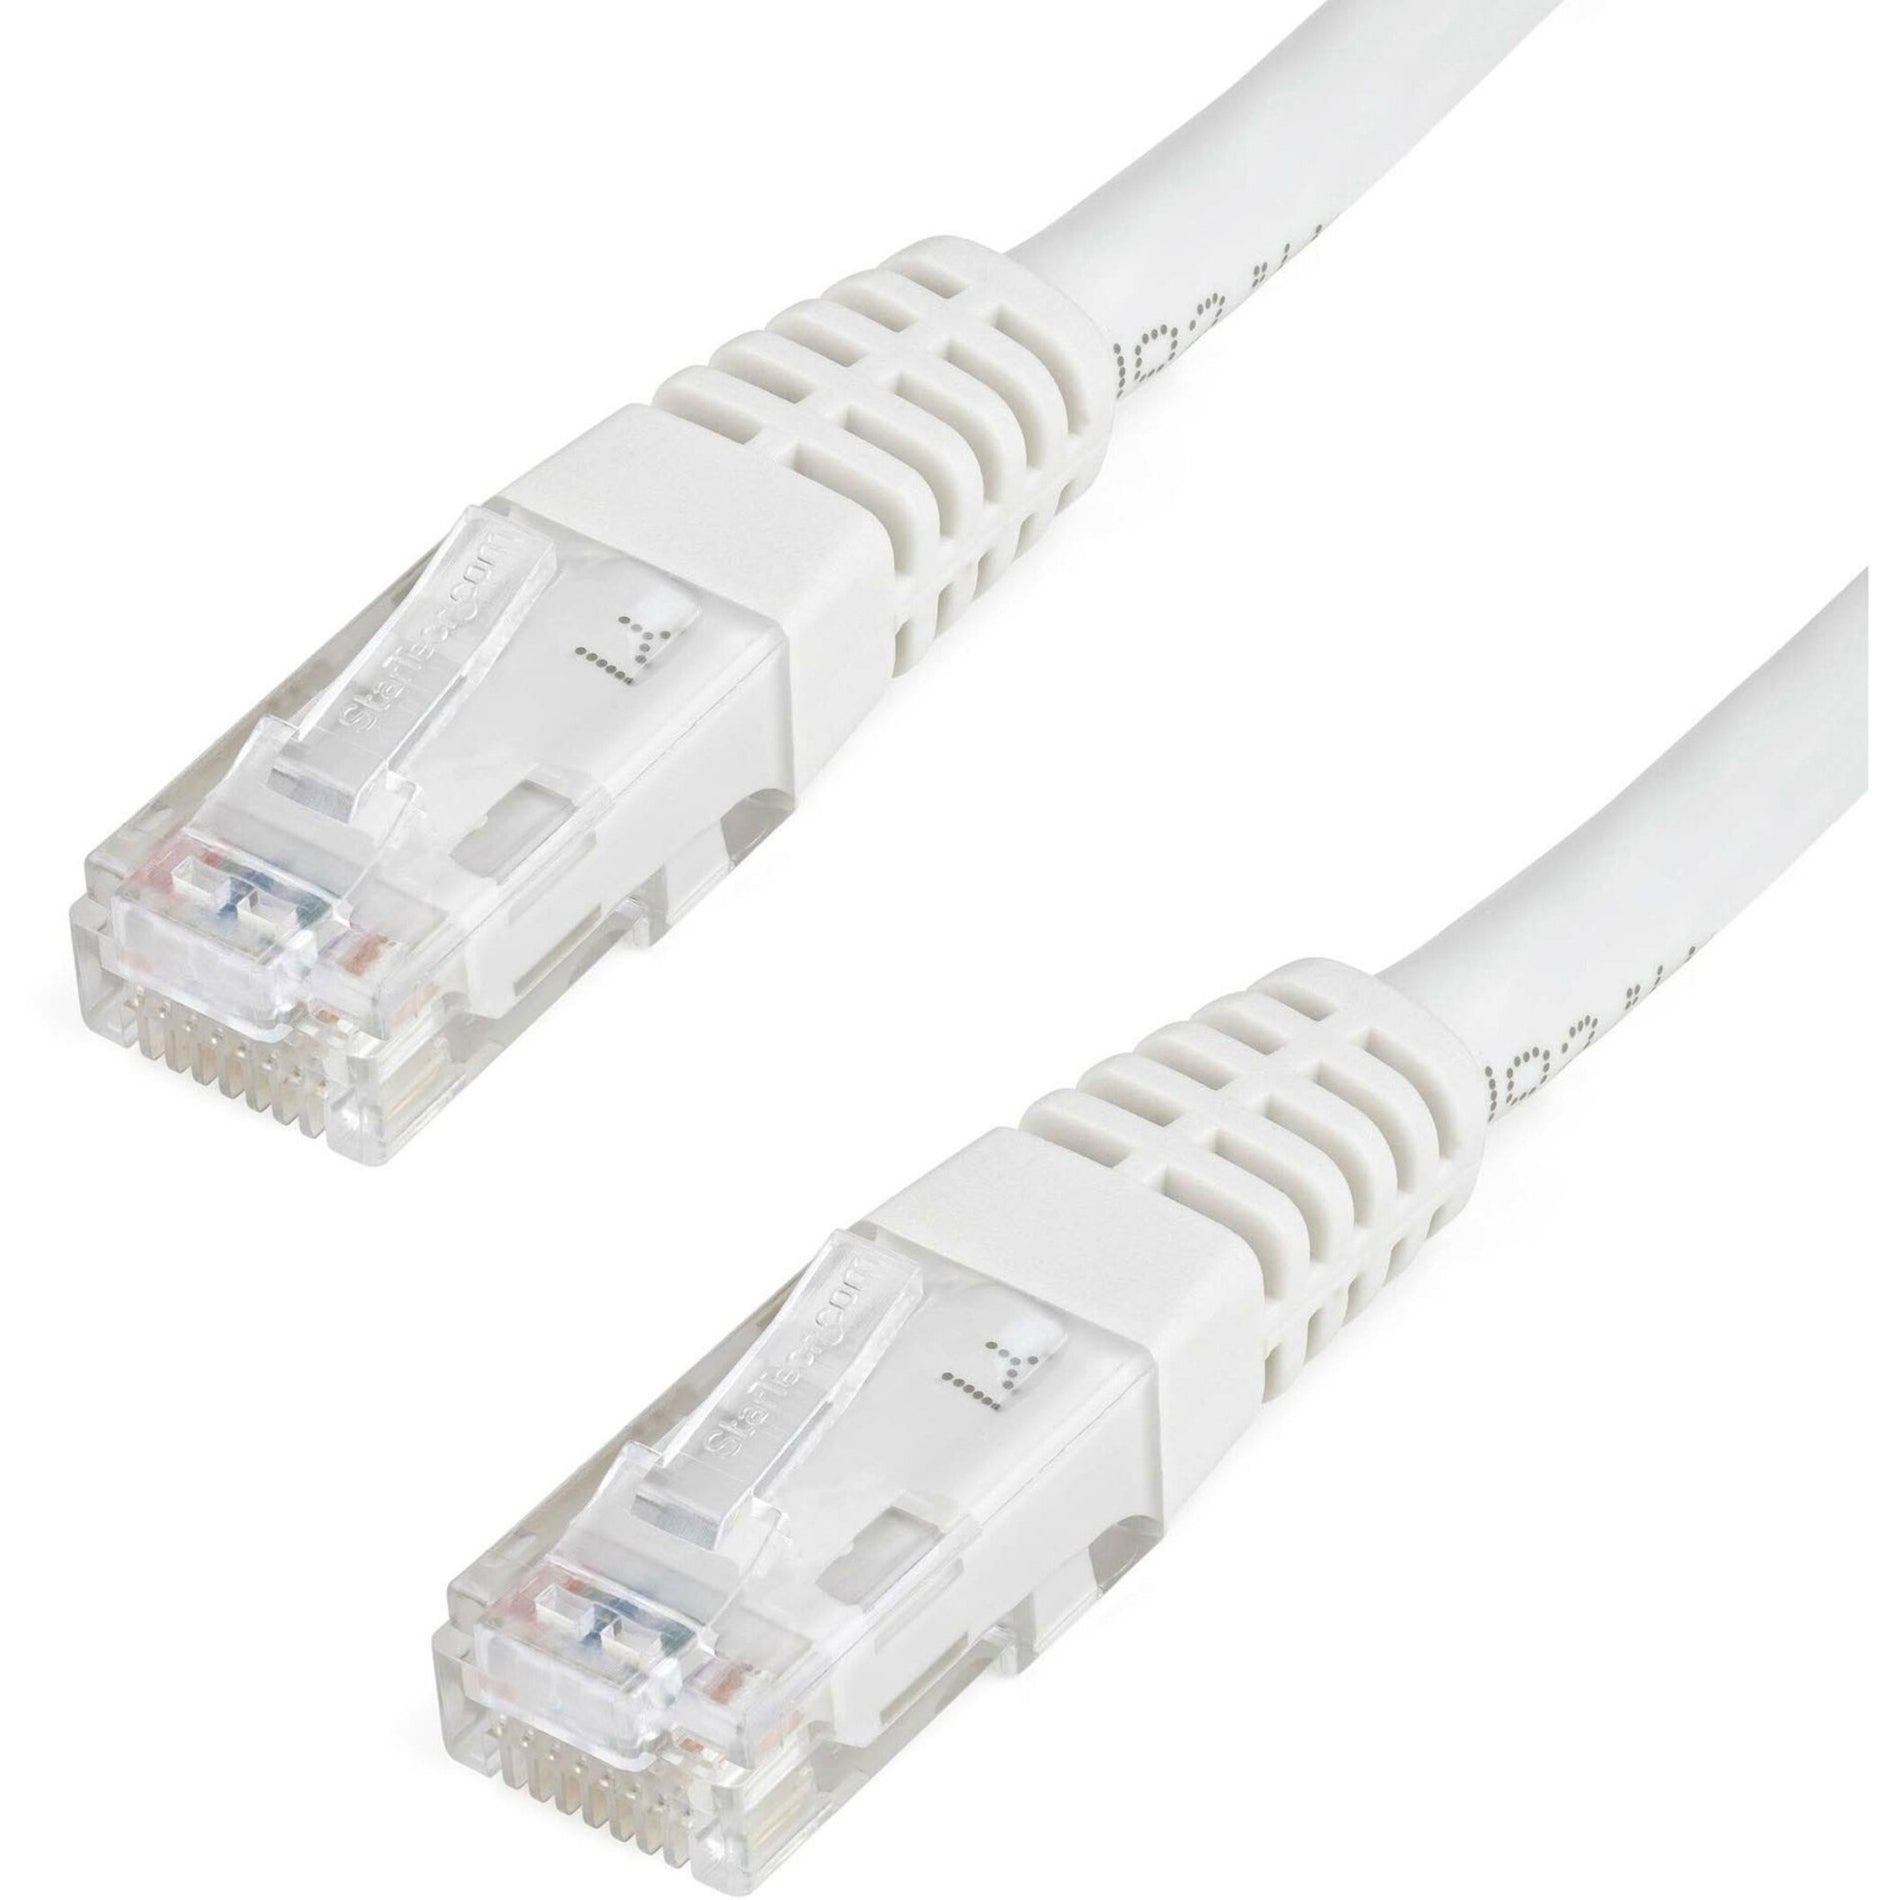 Marca: StarTech.com Cable de parche UTP Cat6 blanco de 6 pies verificado por ETL velocidad de transferencia de datos de 10 Gbit/s compatible con PoE++